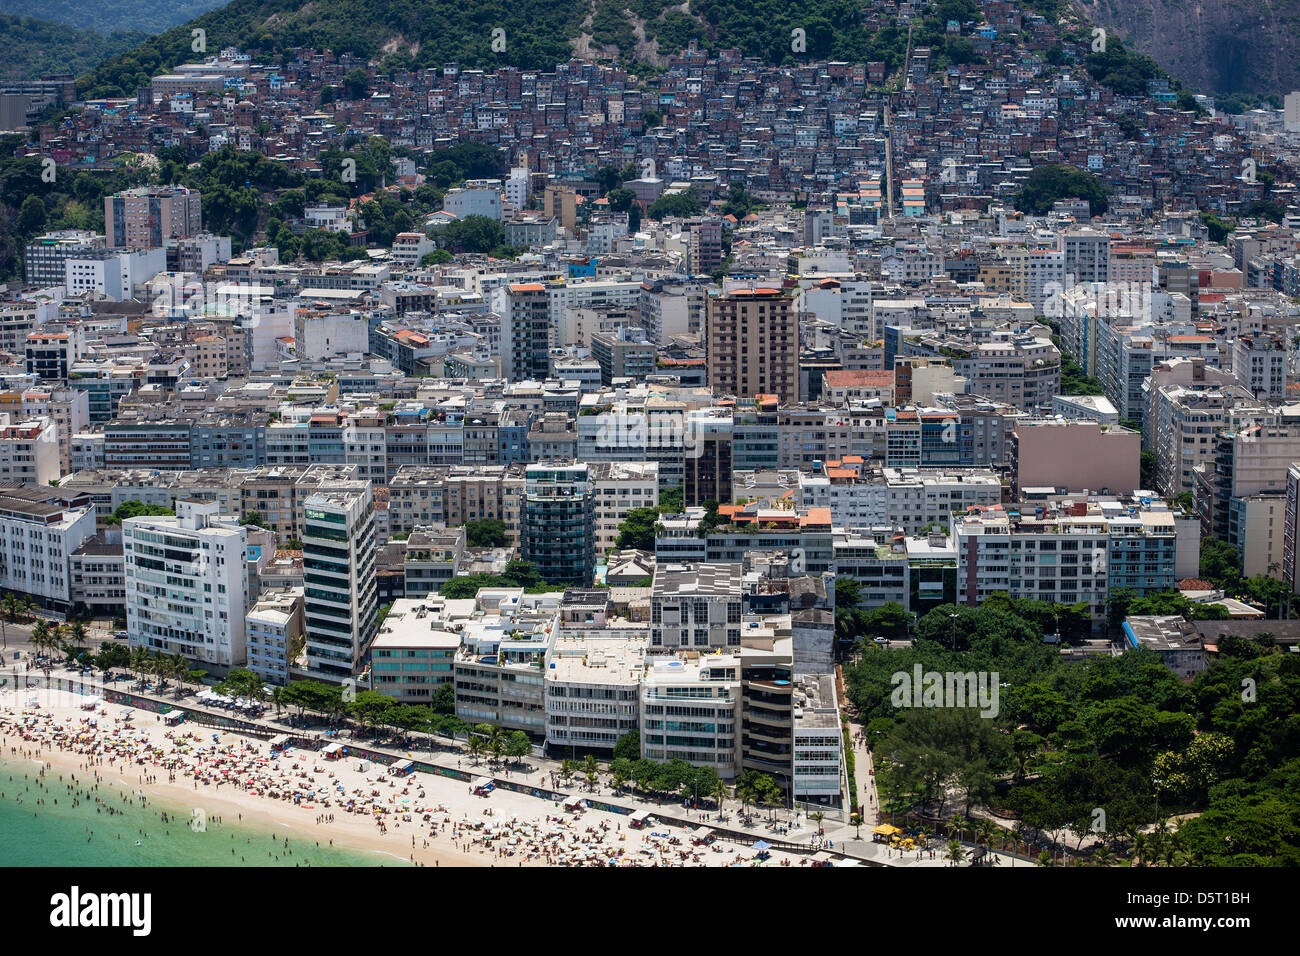 Ipanema-obere Mittelklasse-Viertel in Rio De Janeiro Brasilien Cantagalo Favela Gbackground Arpoador Beach im Vordergrund Stockfoto